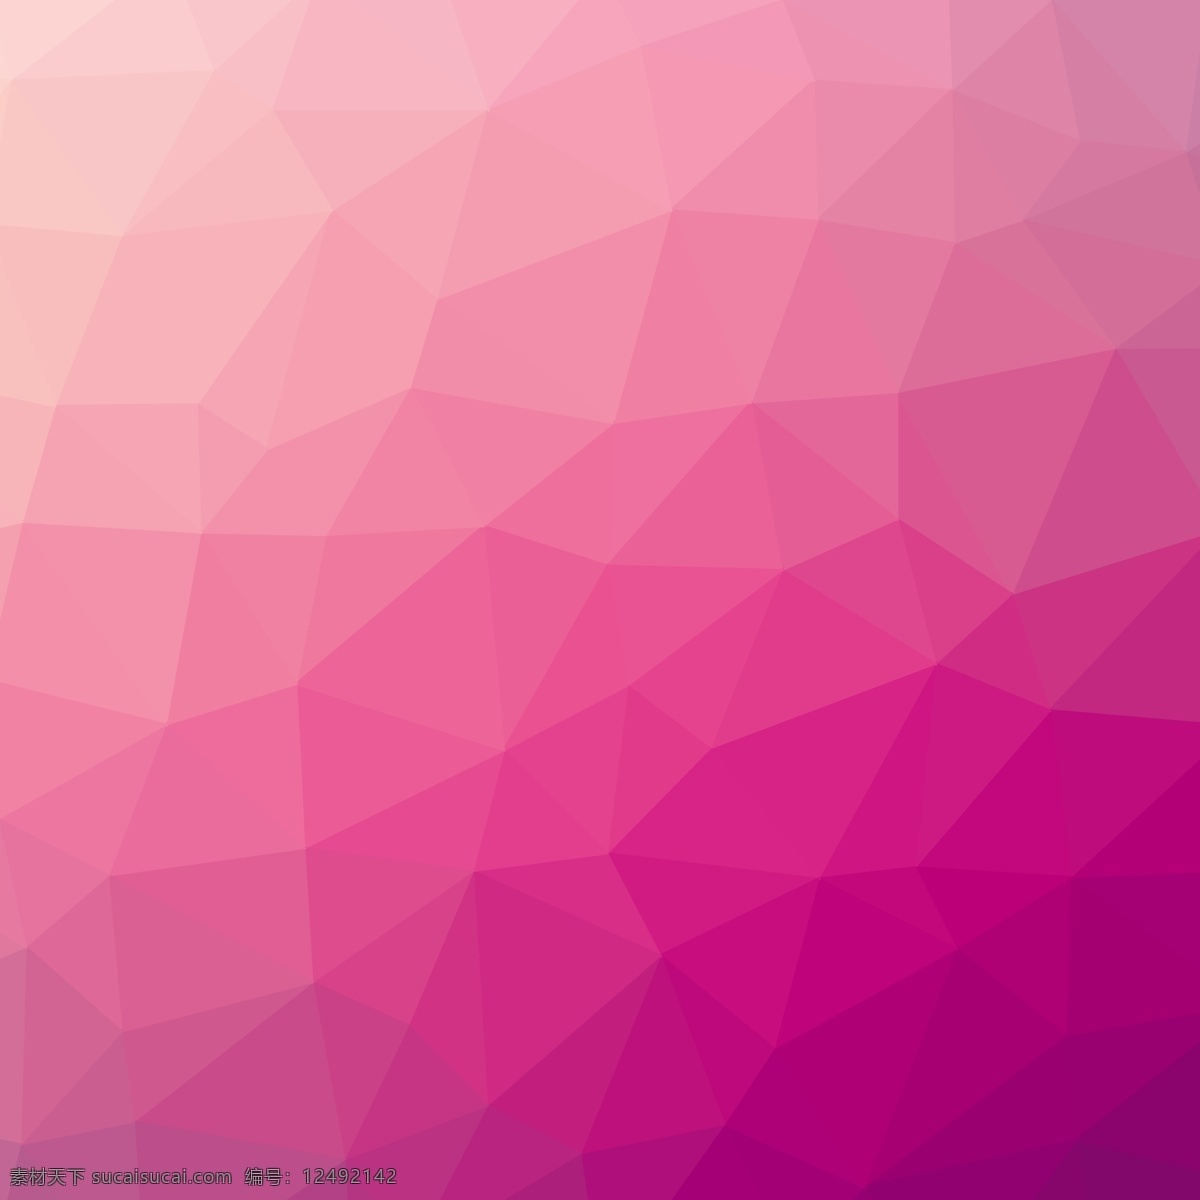 粉红色的背景 背景 抽象 纹理 几何 光 覆盖 颜色 粉红色 图形 平面设计 几何背景 元素 设计元素 镶嵌 抽象设计 封面设计 粉色